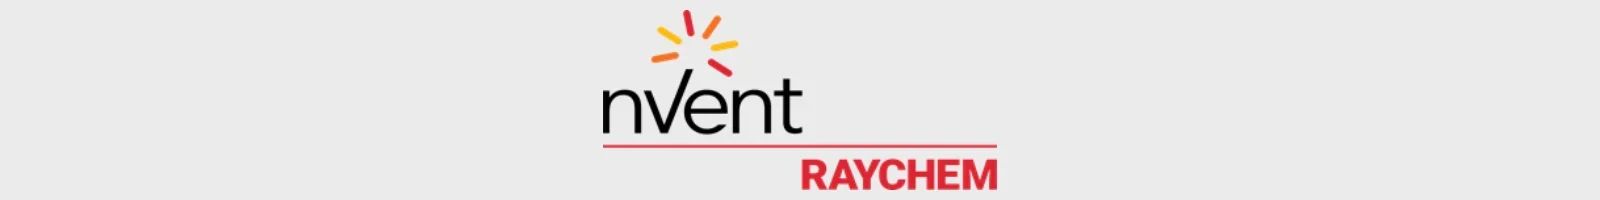 nvent raychem logo